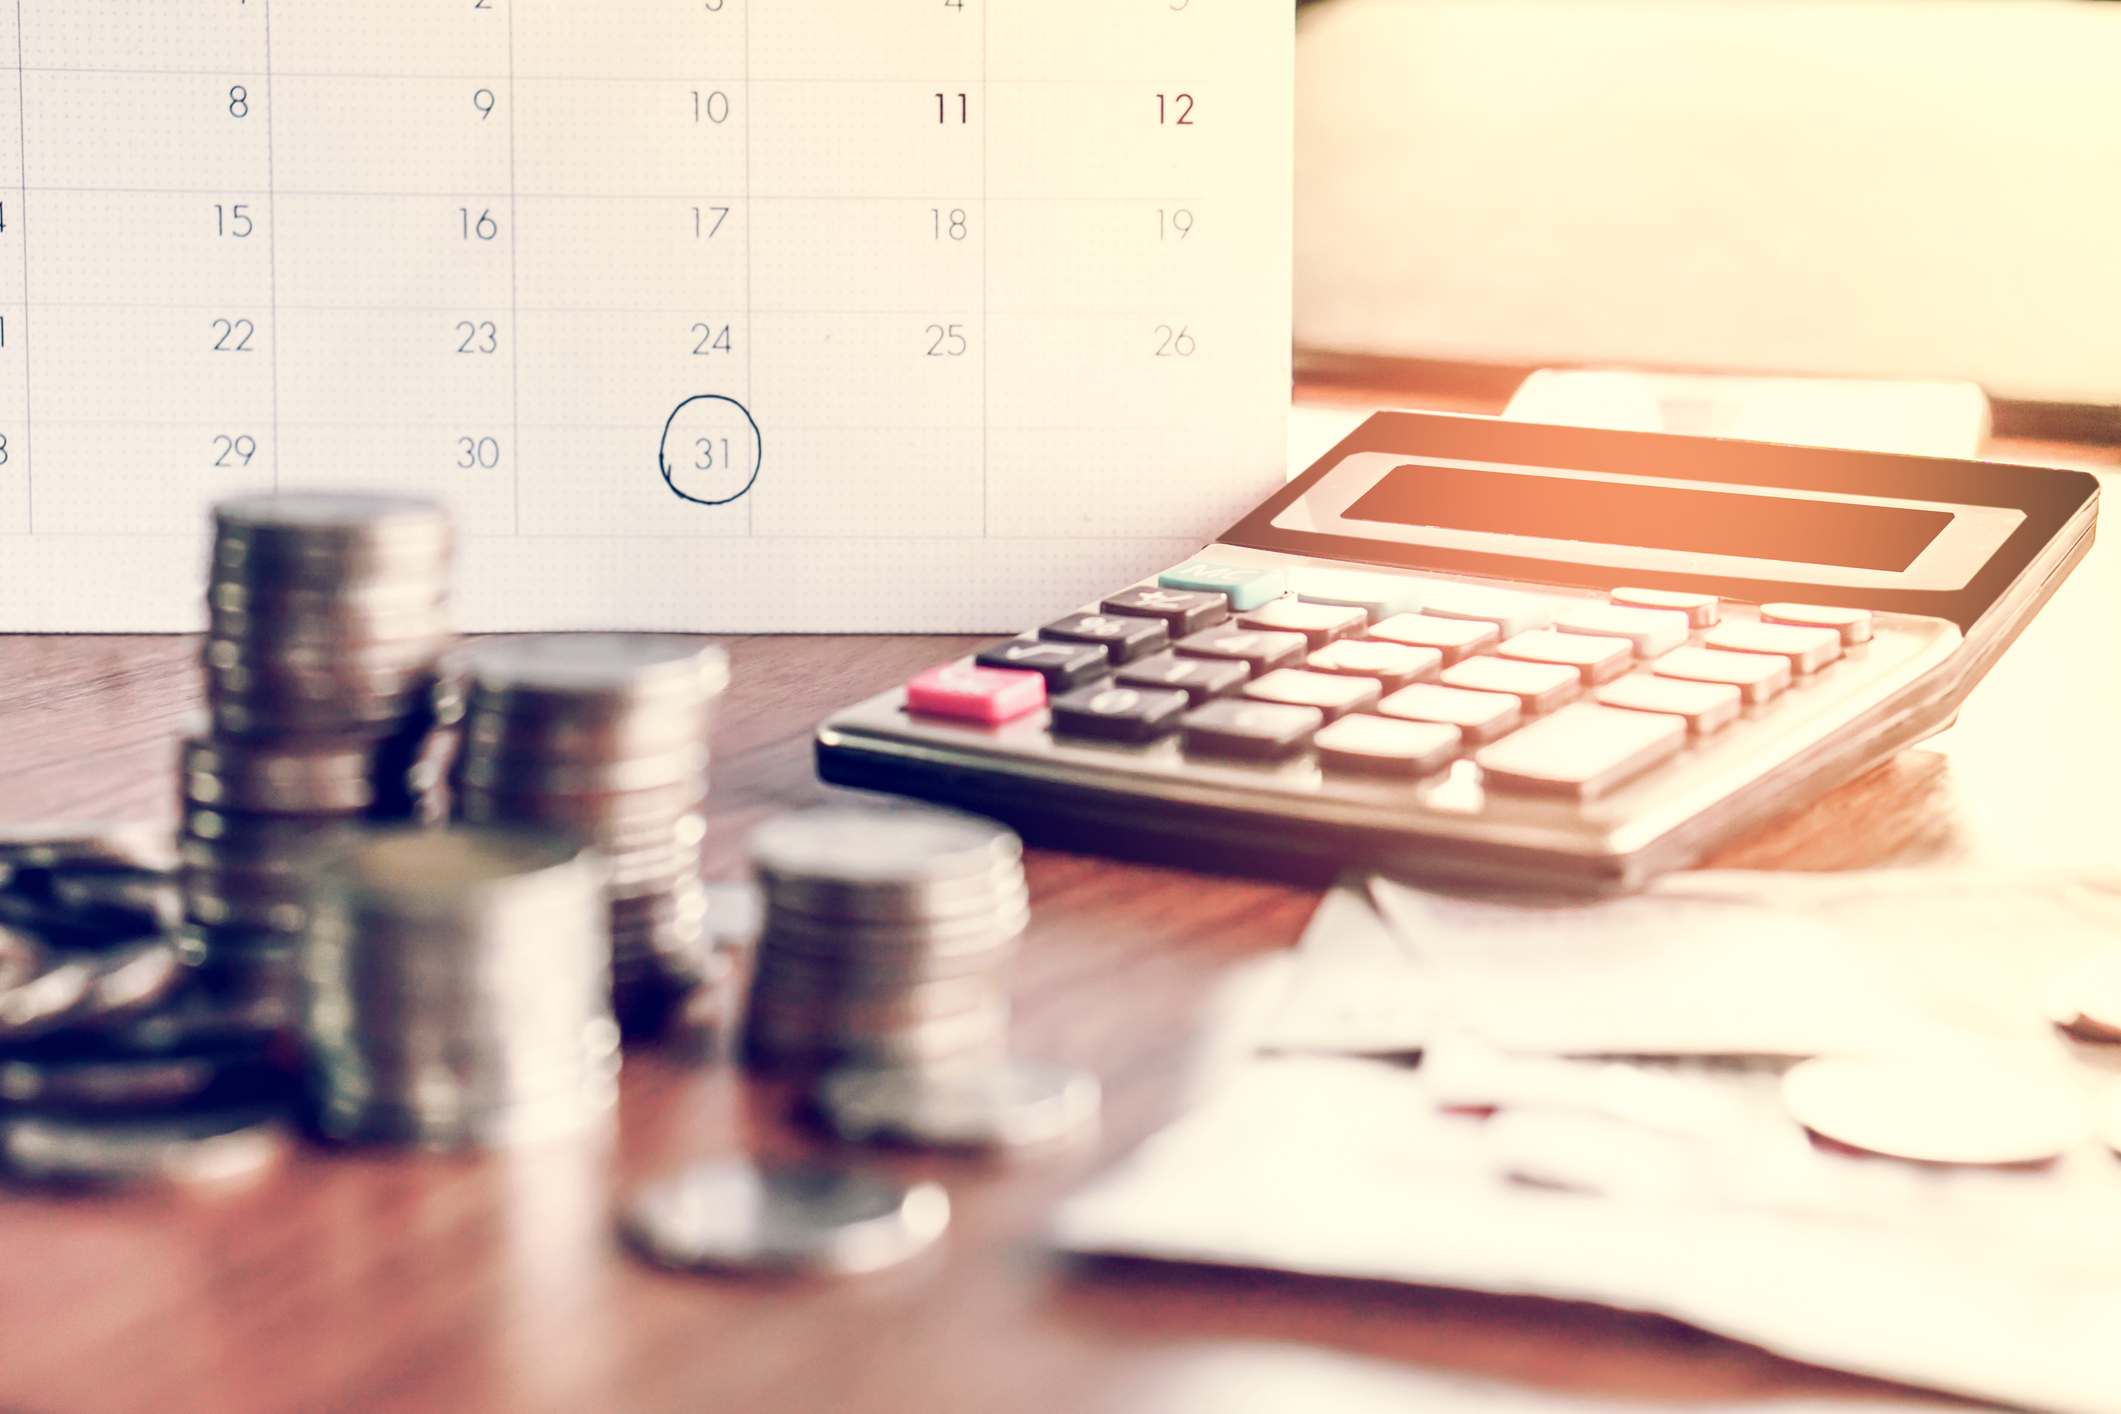 Sobre a mesa: um calendário, moedas, uma calculadora e papeis. 